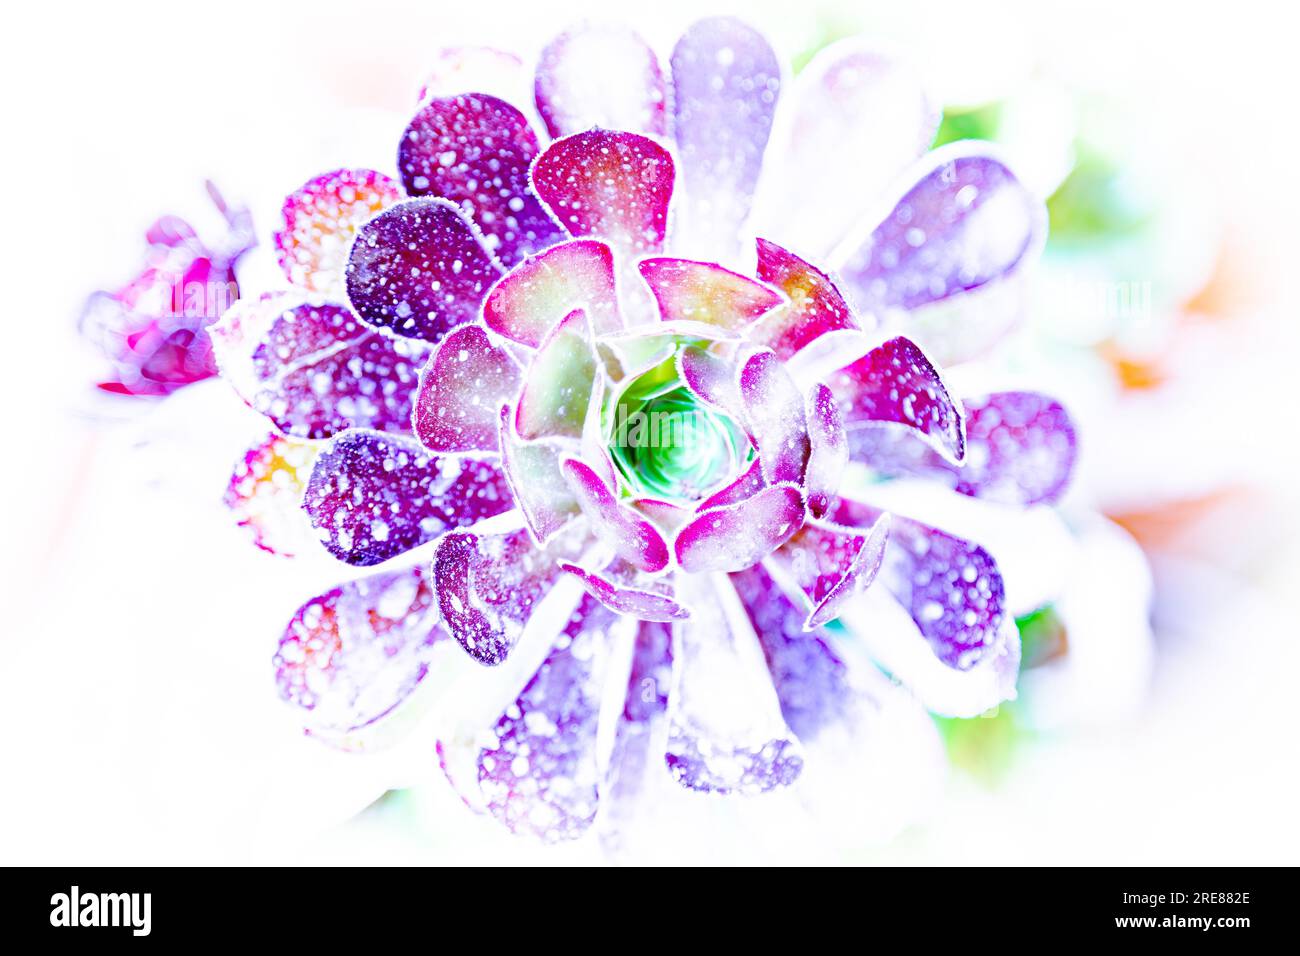 Pianta succulenta a luce intensa con illuminazione uv. Succulento in vivaci colori neon isolati su sfondo bianco. Splendida foto di sfondo fiorito. Foto Stock